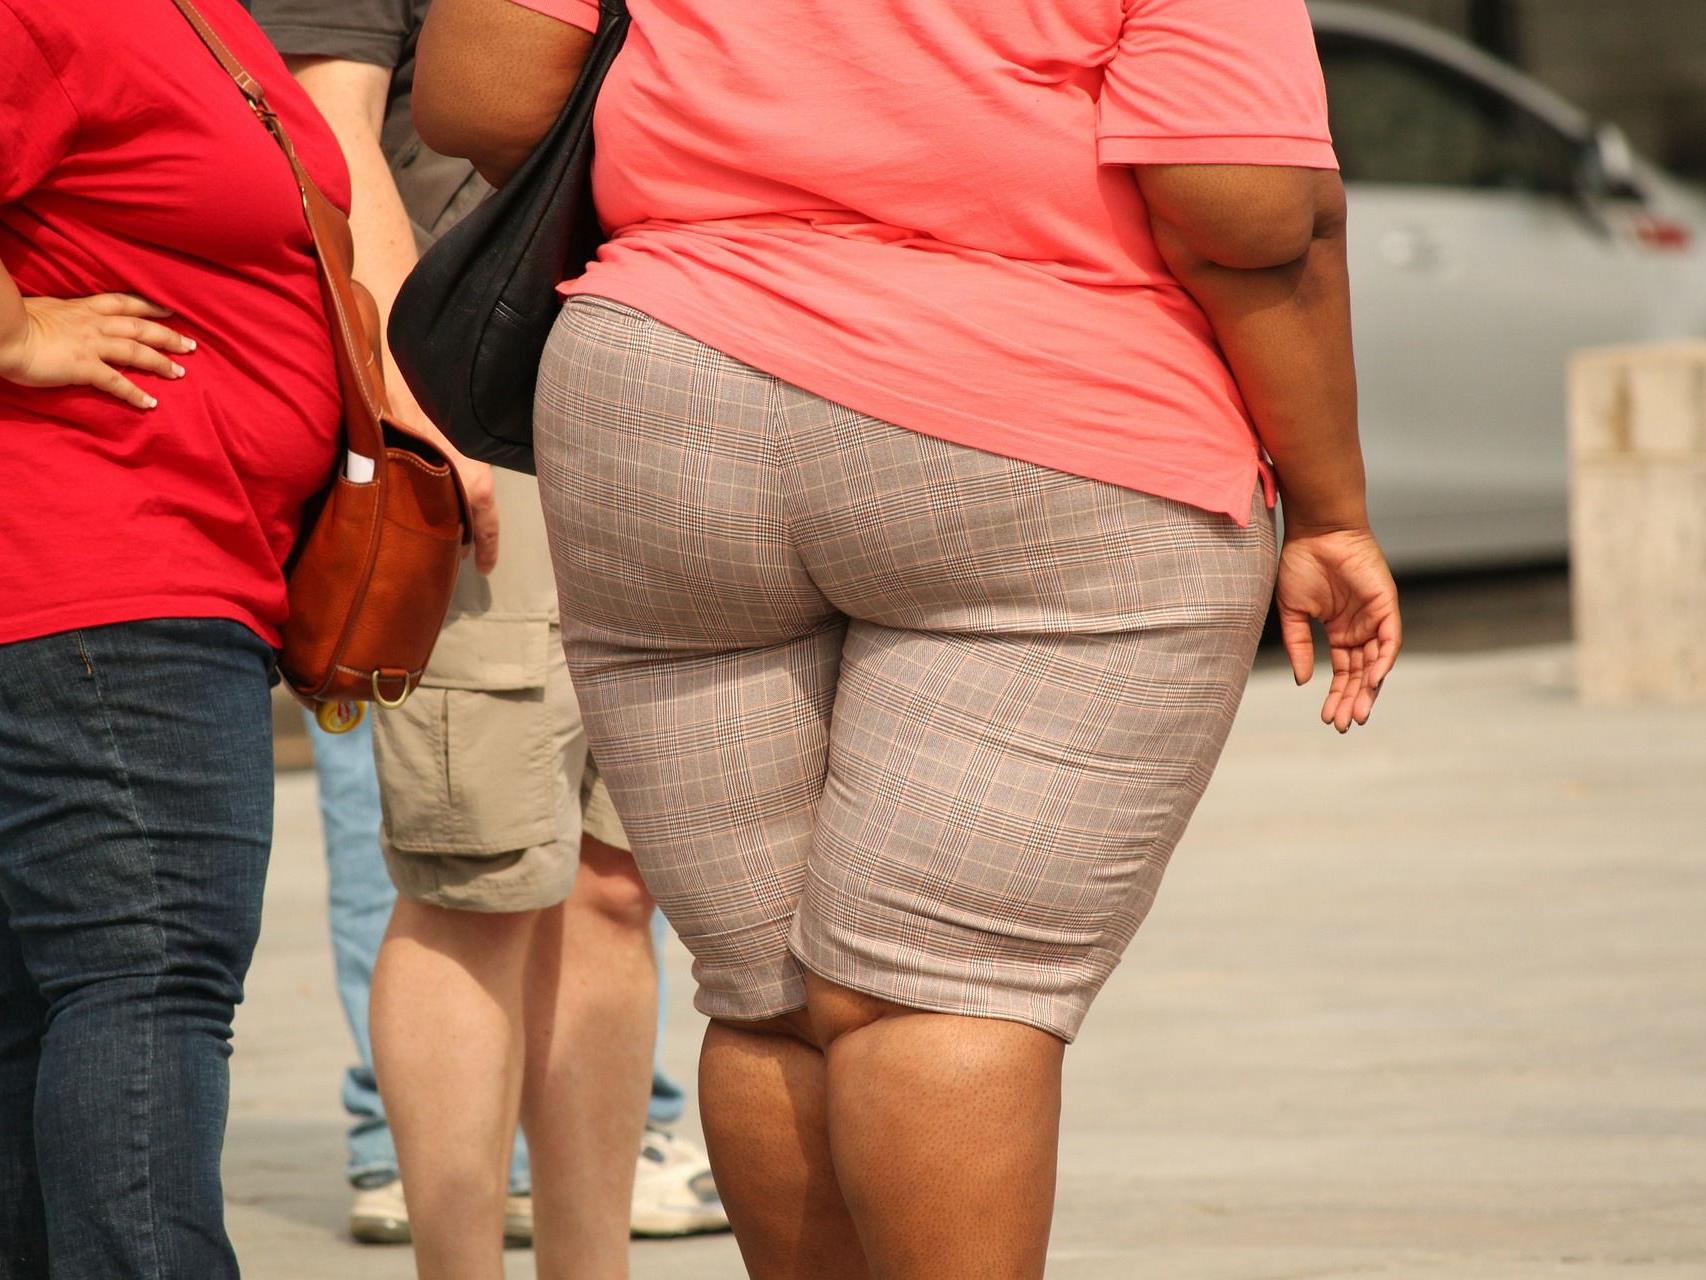 Laut Forschern macht Hausstaub übergewichtig.